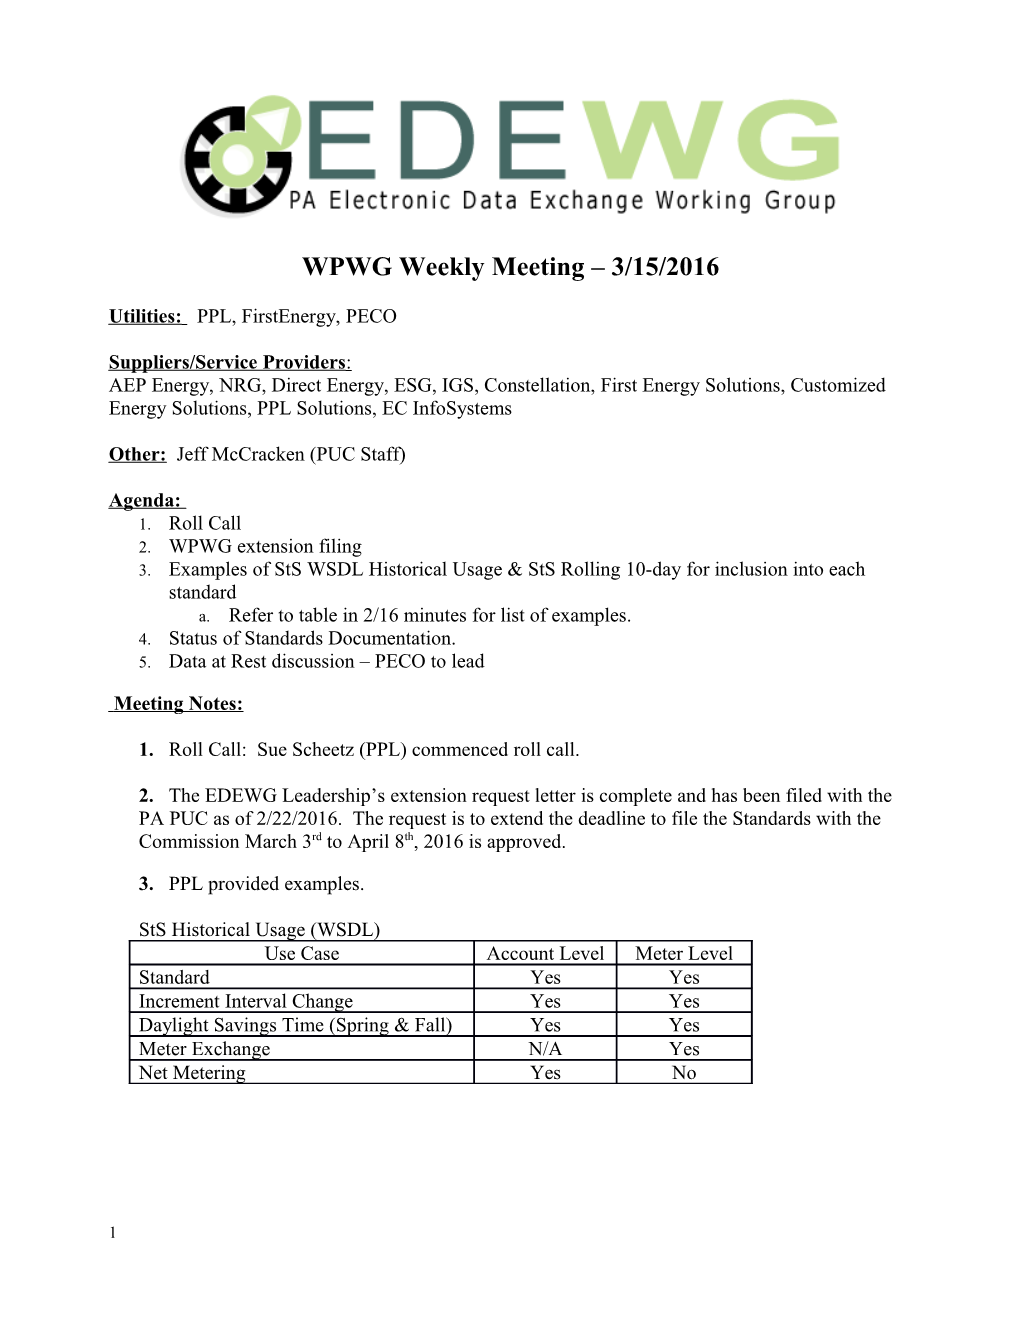 EDEWG Meeting Minutes